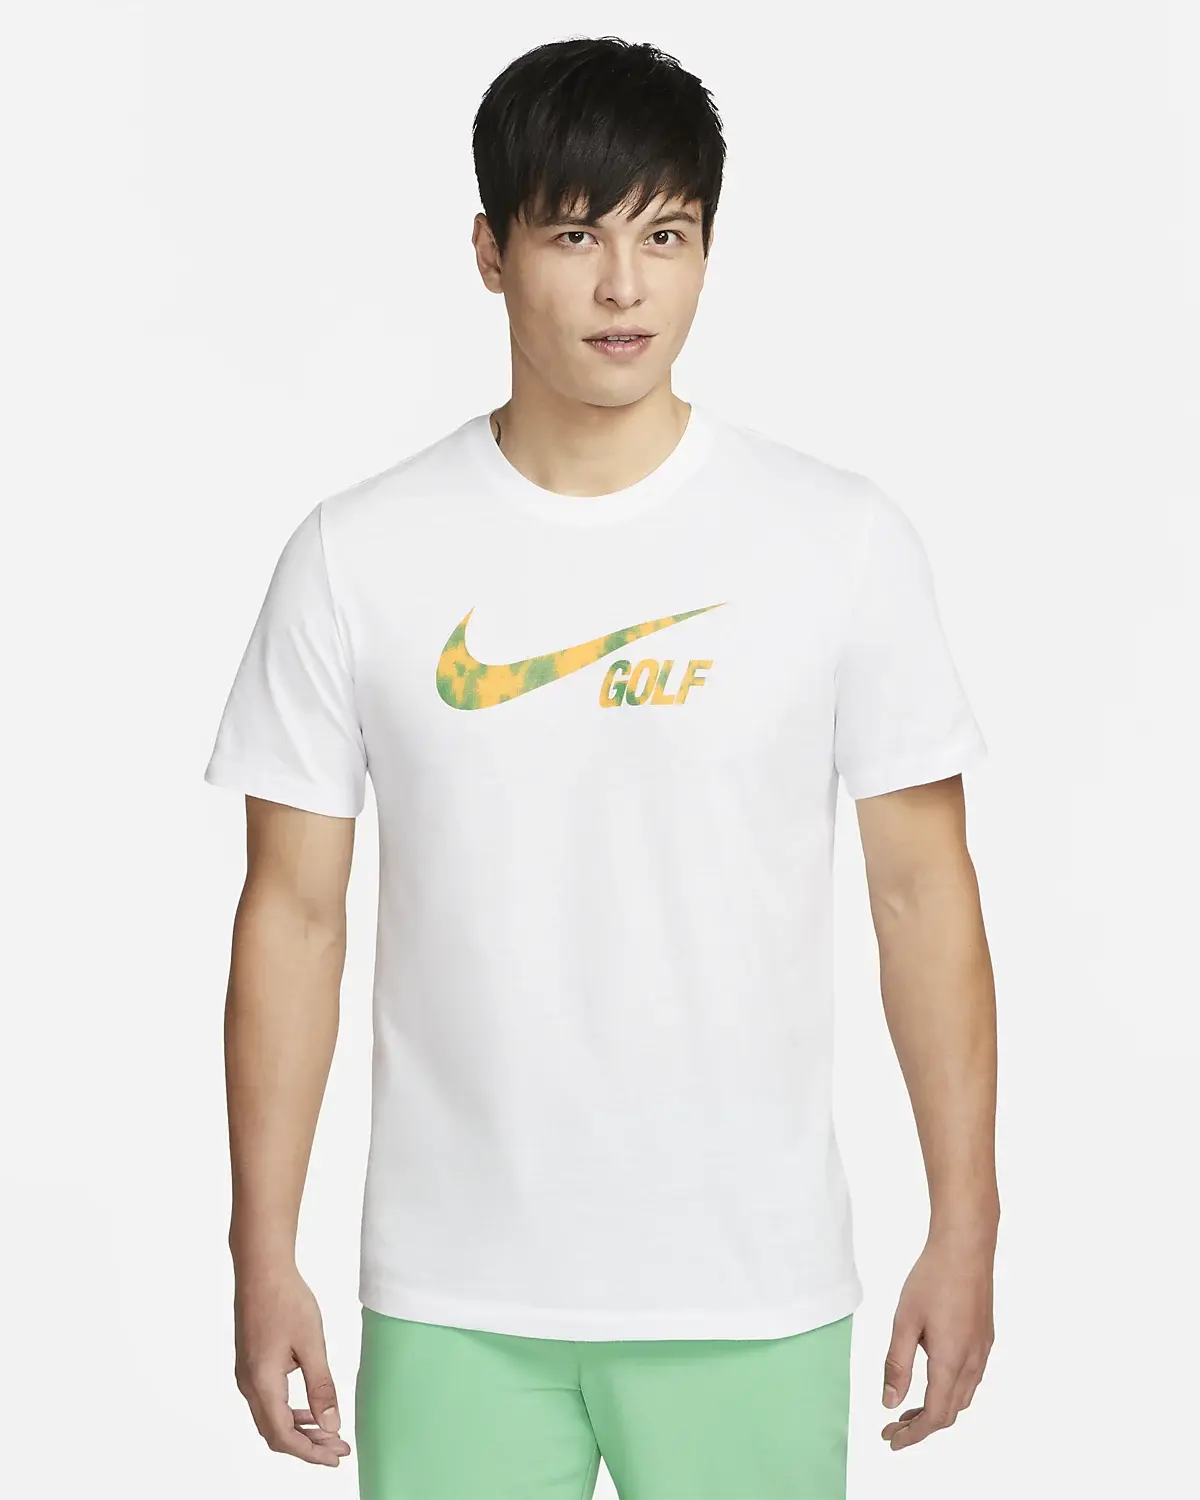 Nike TShirts. 1